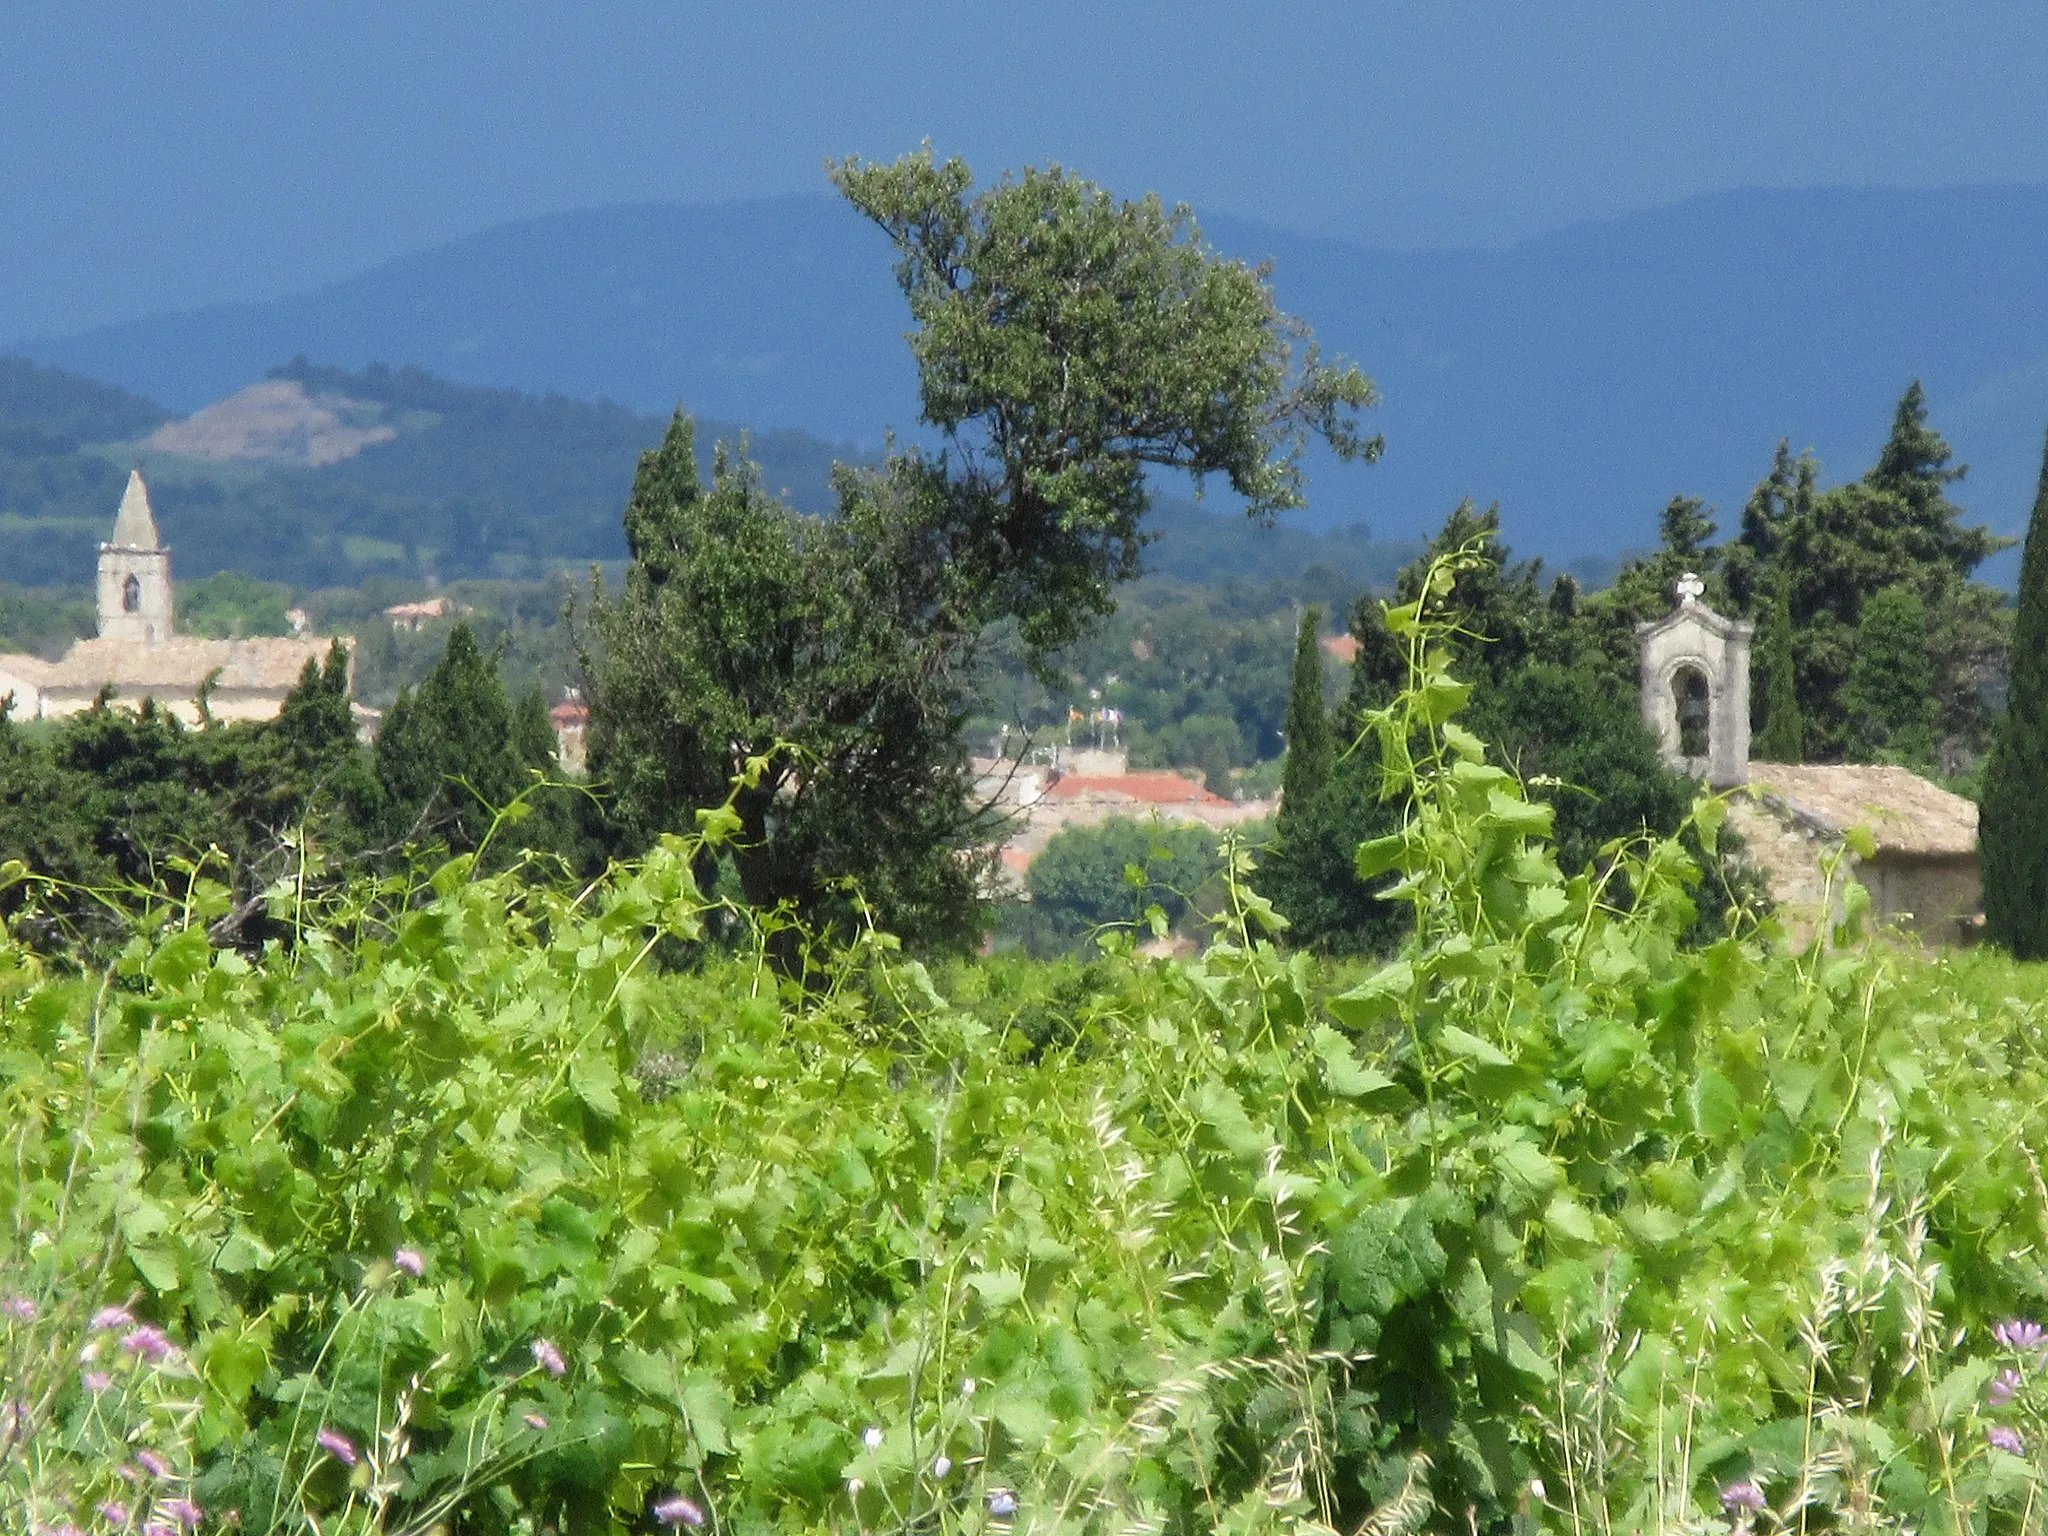 Photo showing: Au-delà des vignes, on aperçoit le clocher de l'église de Tulette (Drôme, France) à gauche et la chapelle de Roure à droite.